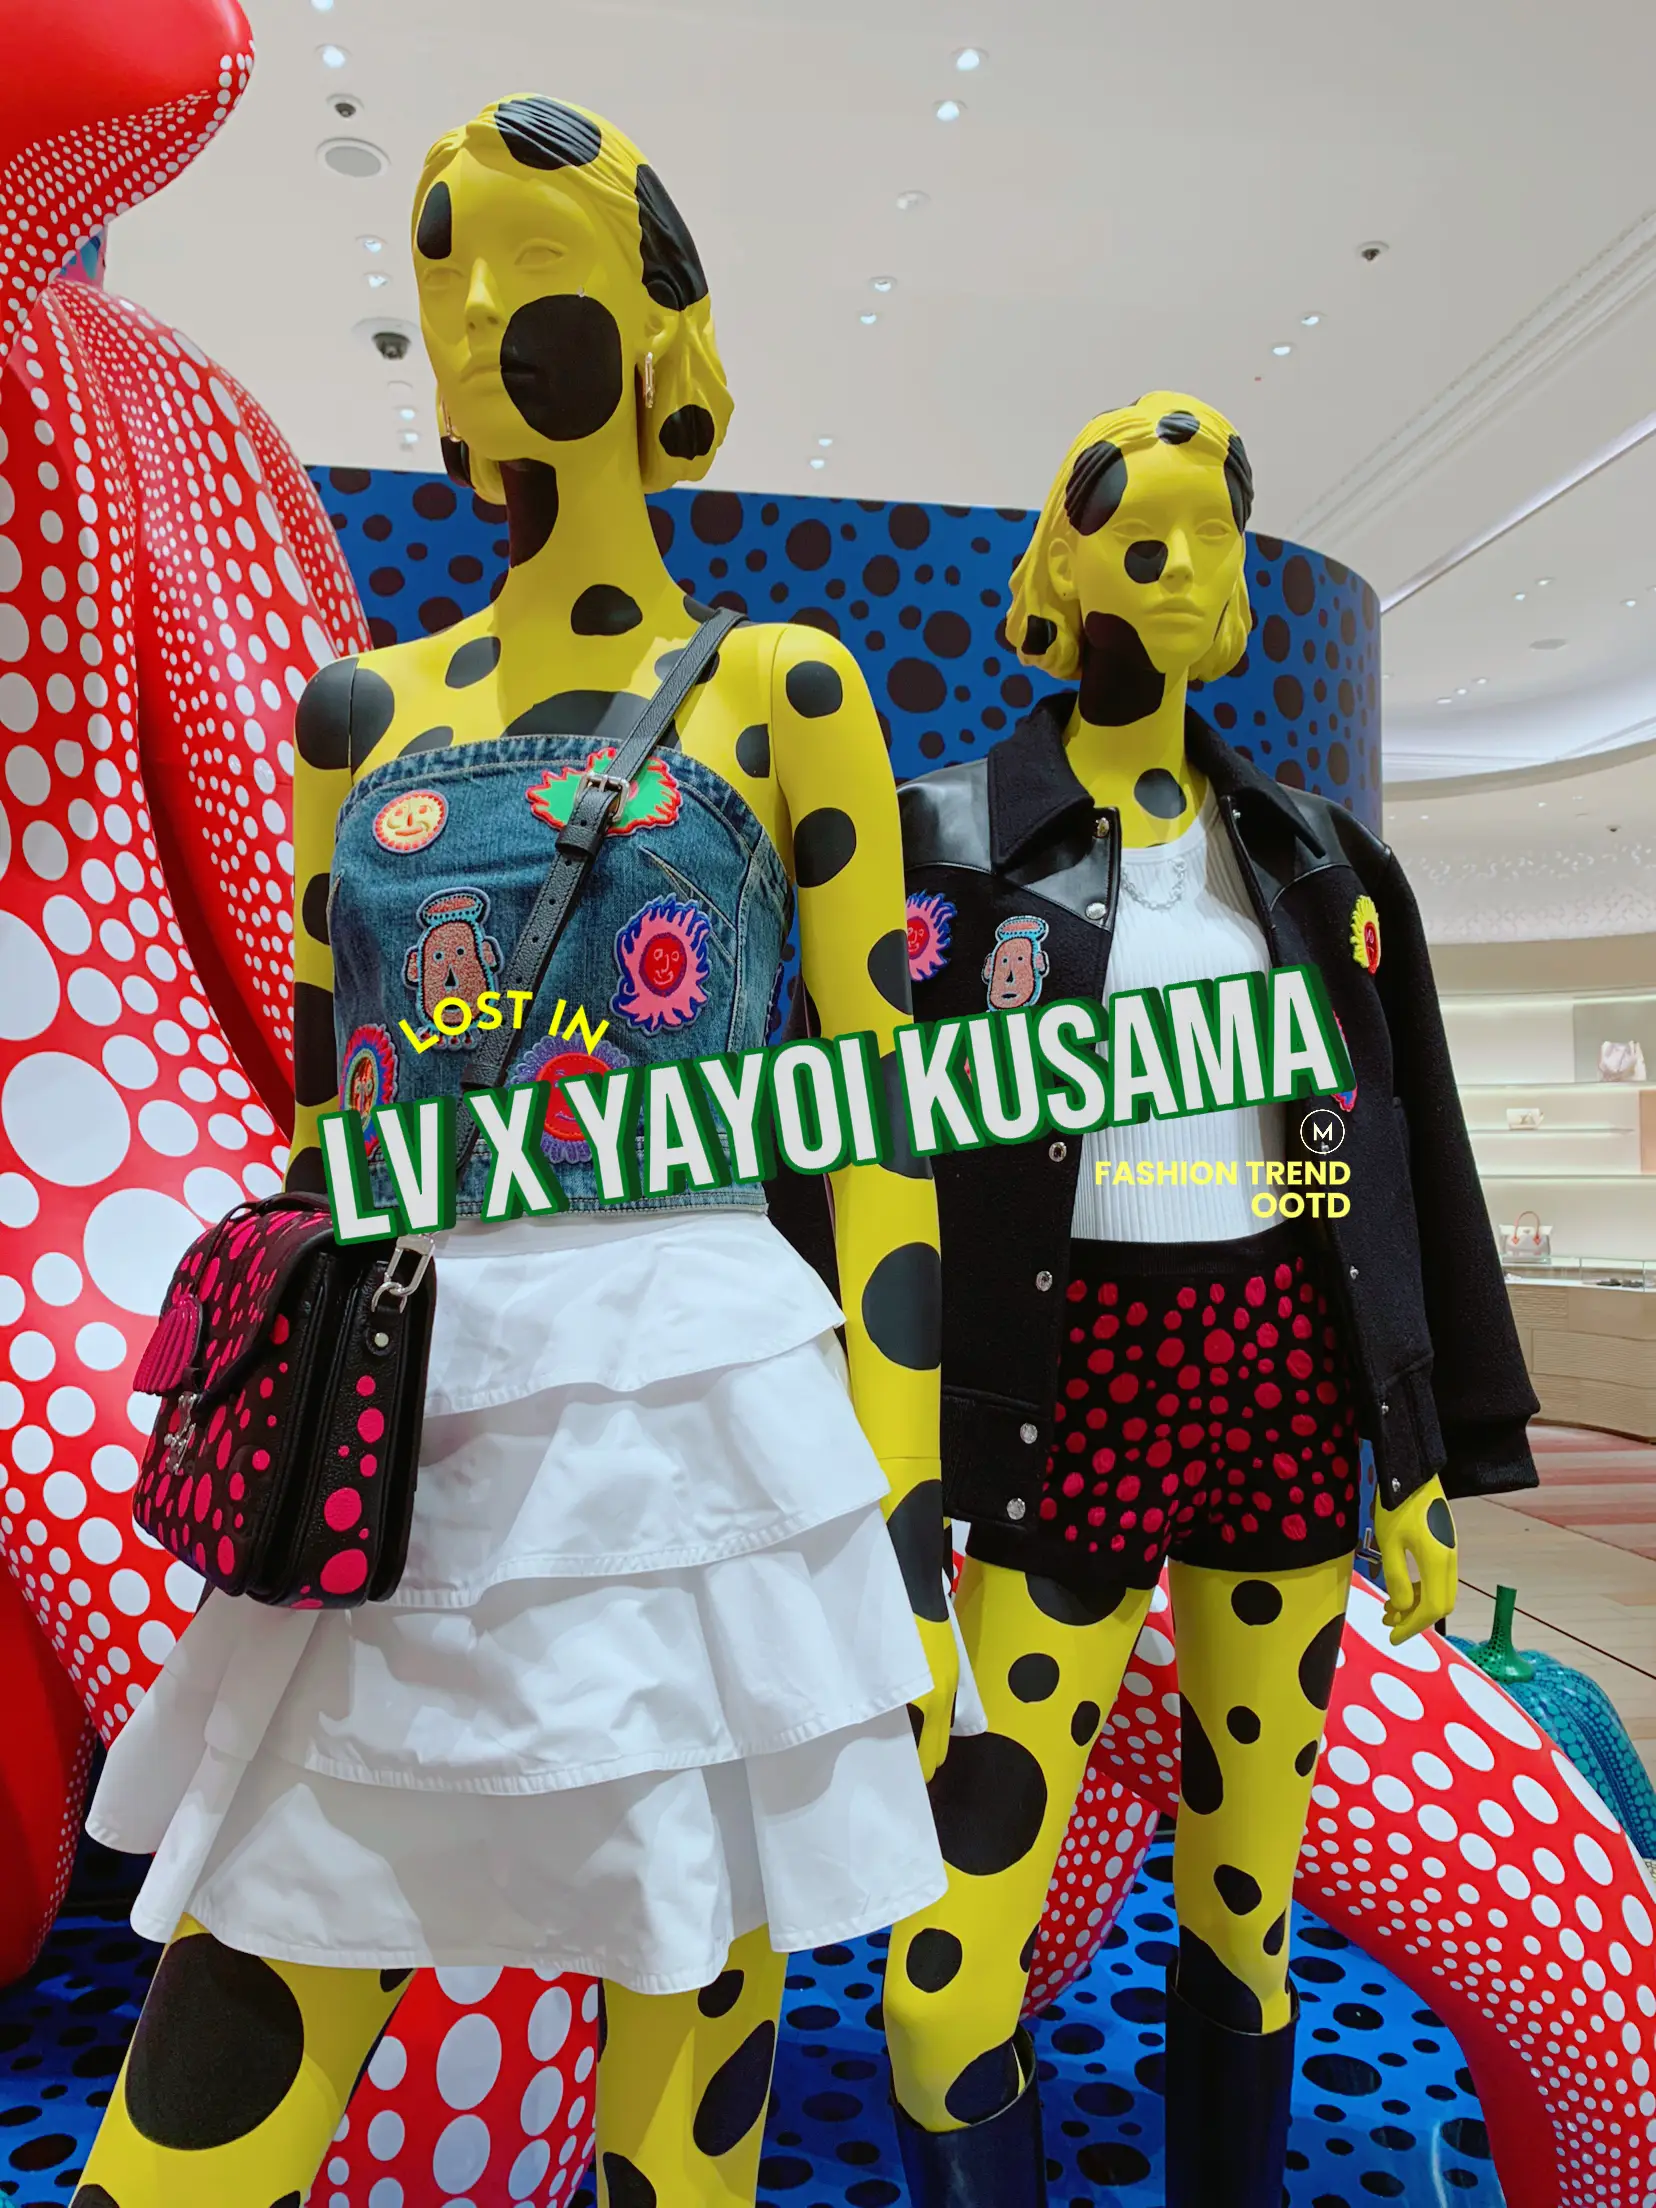 Yayoi Kusama & Louis Vuitton - London Harrods #fyp #art